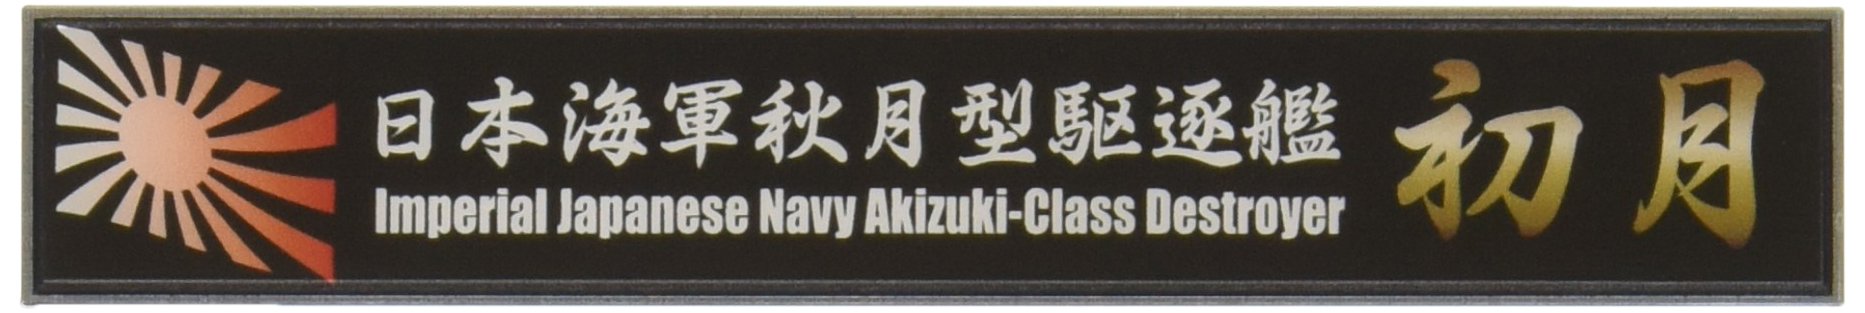 FUJIMI Ship Name Plate Series No.34 Ijn Akizuki-Klasse Zerstörer Hatsuzuki